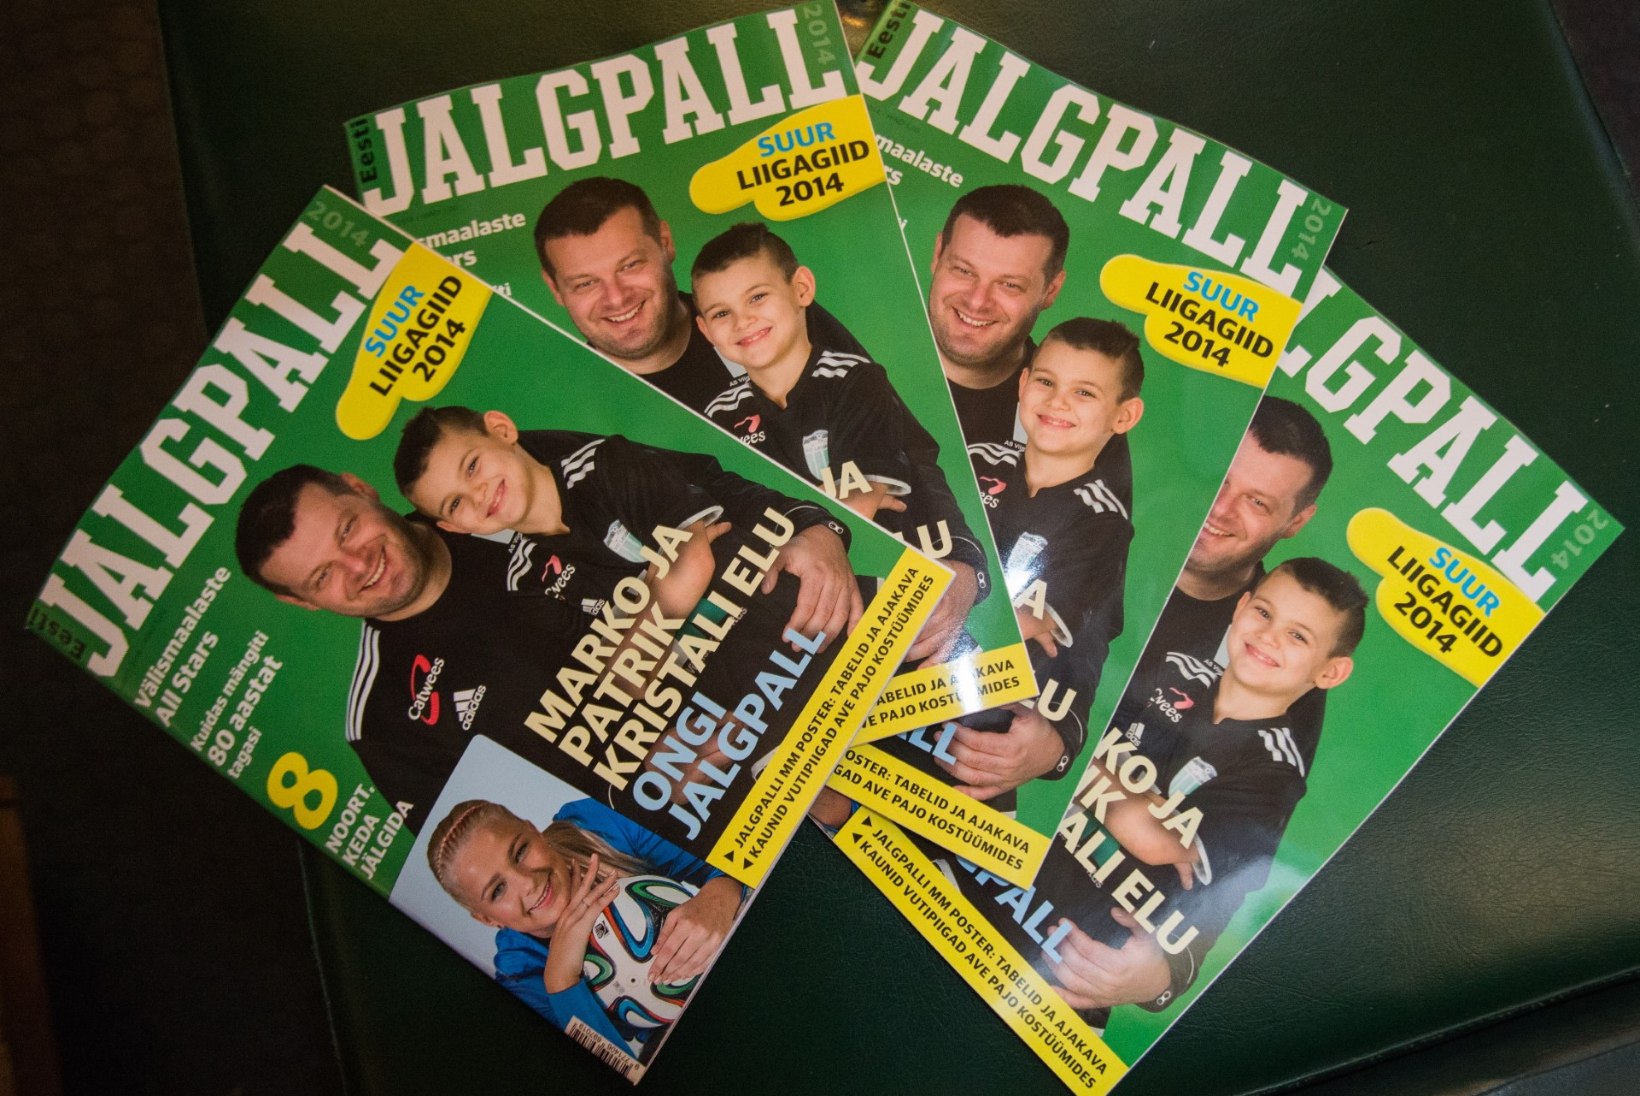 GALERII: Ajakirja "Eesti jalgpall 2014" esitlus